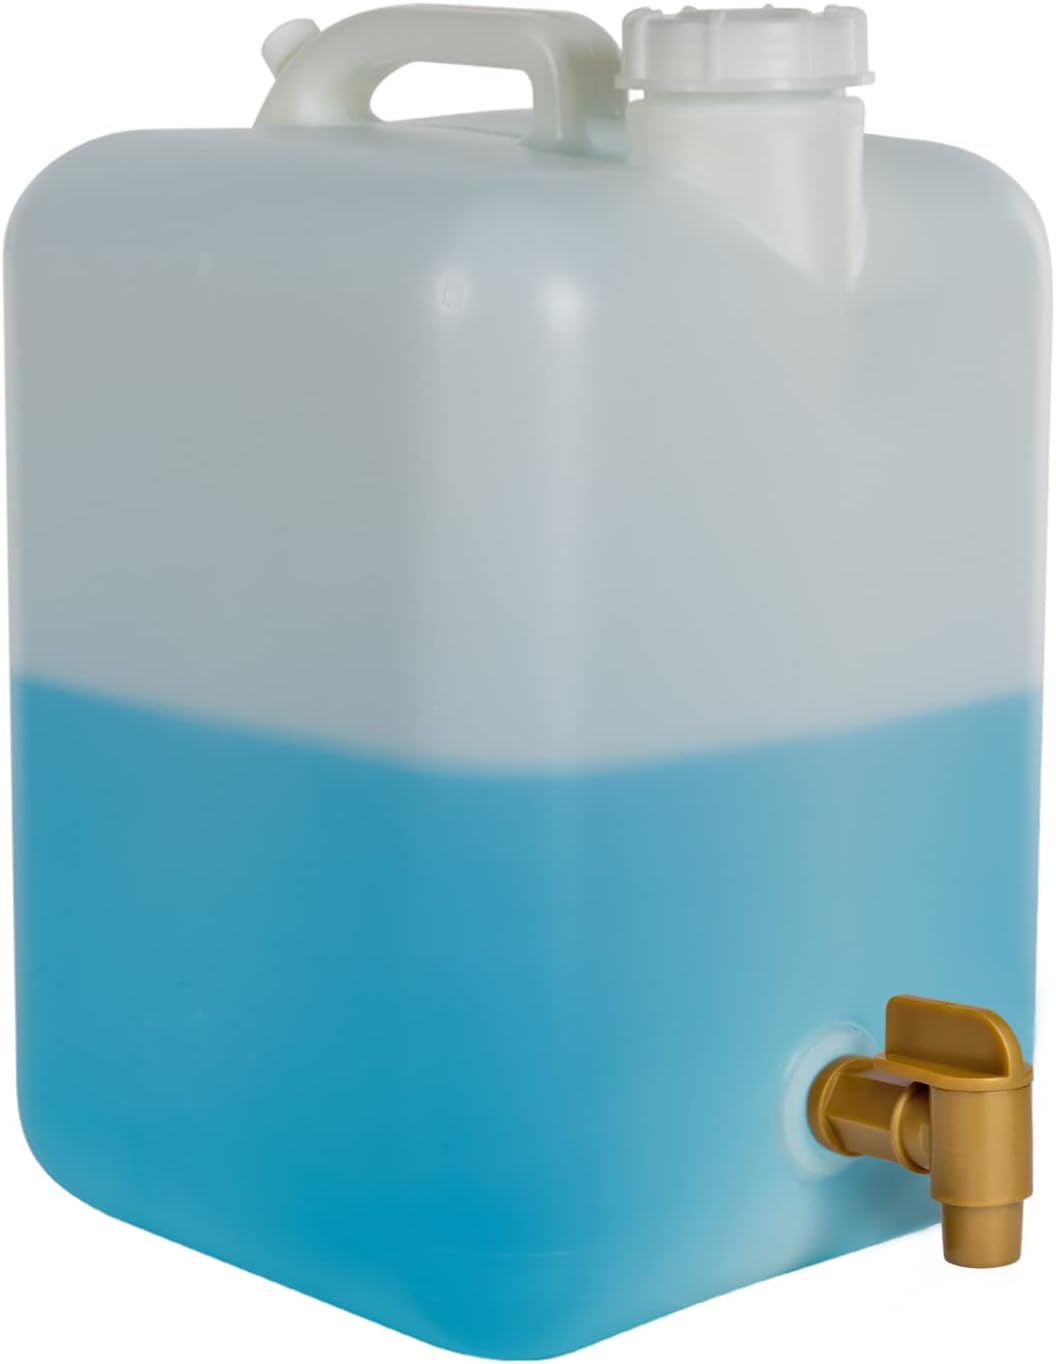 PowGrow Plastic Faucet Spigot, 3/4" NPT Spigot Faucet for 5, 6 Gallon Plastic Drums, Durable Polyethylene Material 3/4" Barre